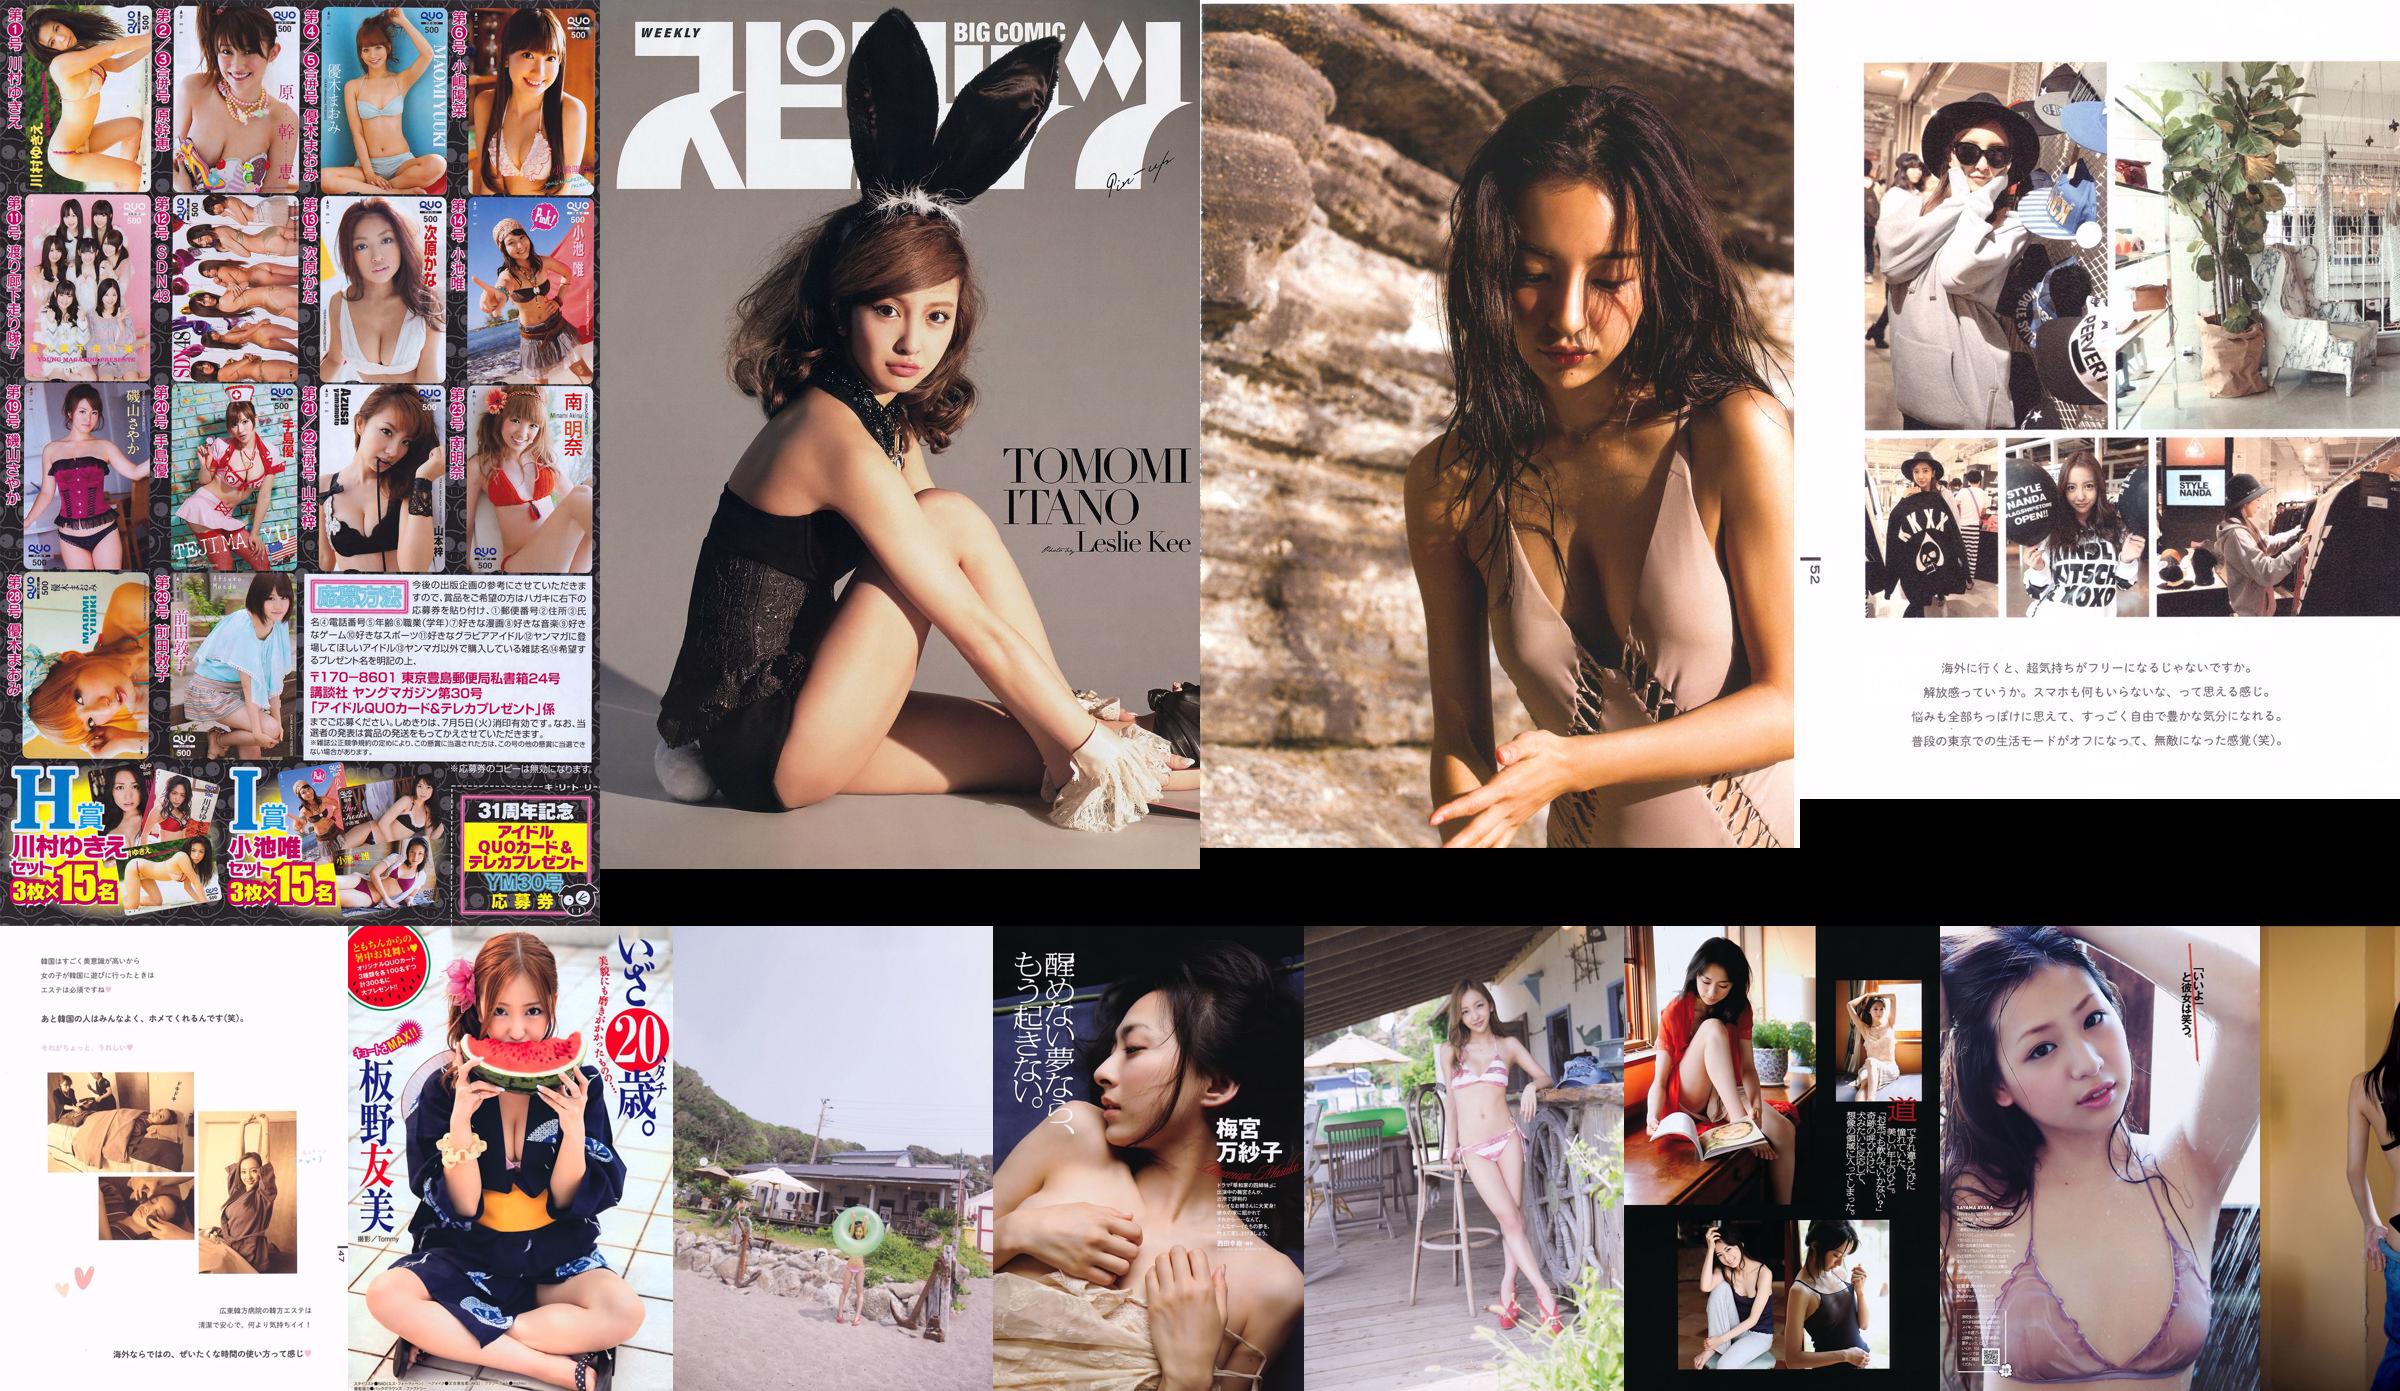 [Grands esprits de la bande dessinée hebdomadaire] Itano Tomomi 2014 No.30 Photo Magazine No.17a5a1 Page 1